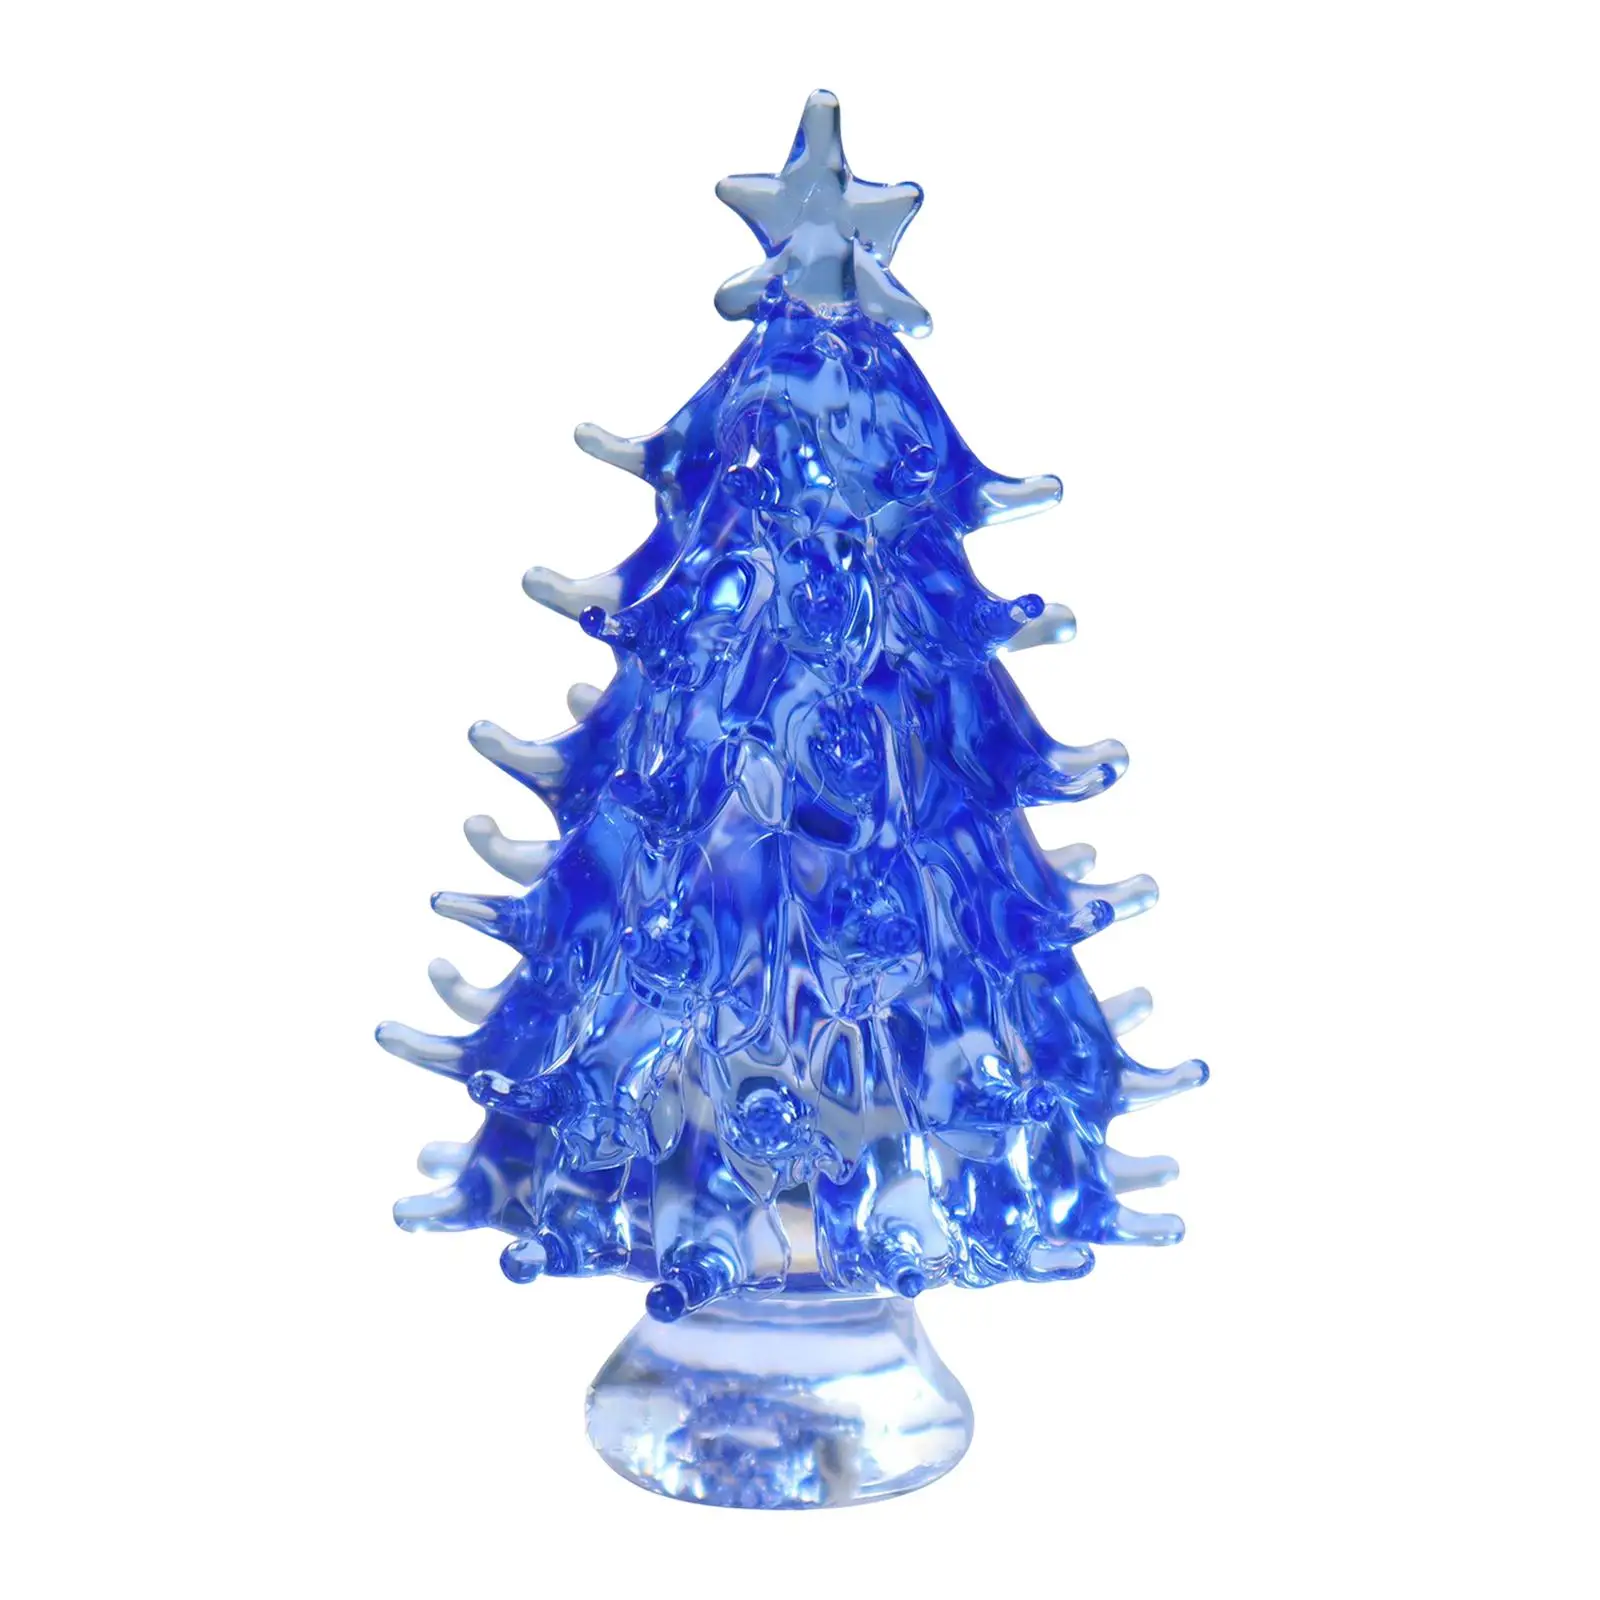 Small Crystal Christmas Tree Figurine Ornament for Christmas Holiday Decor